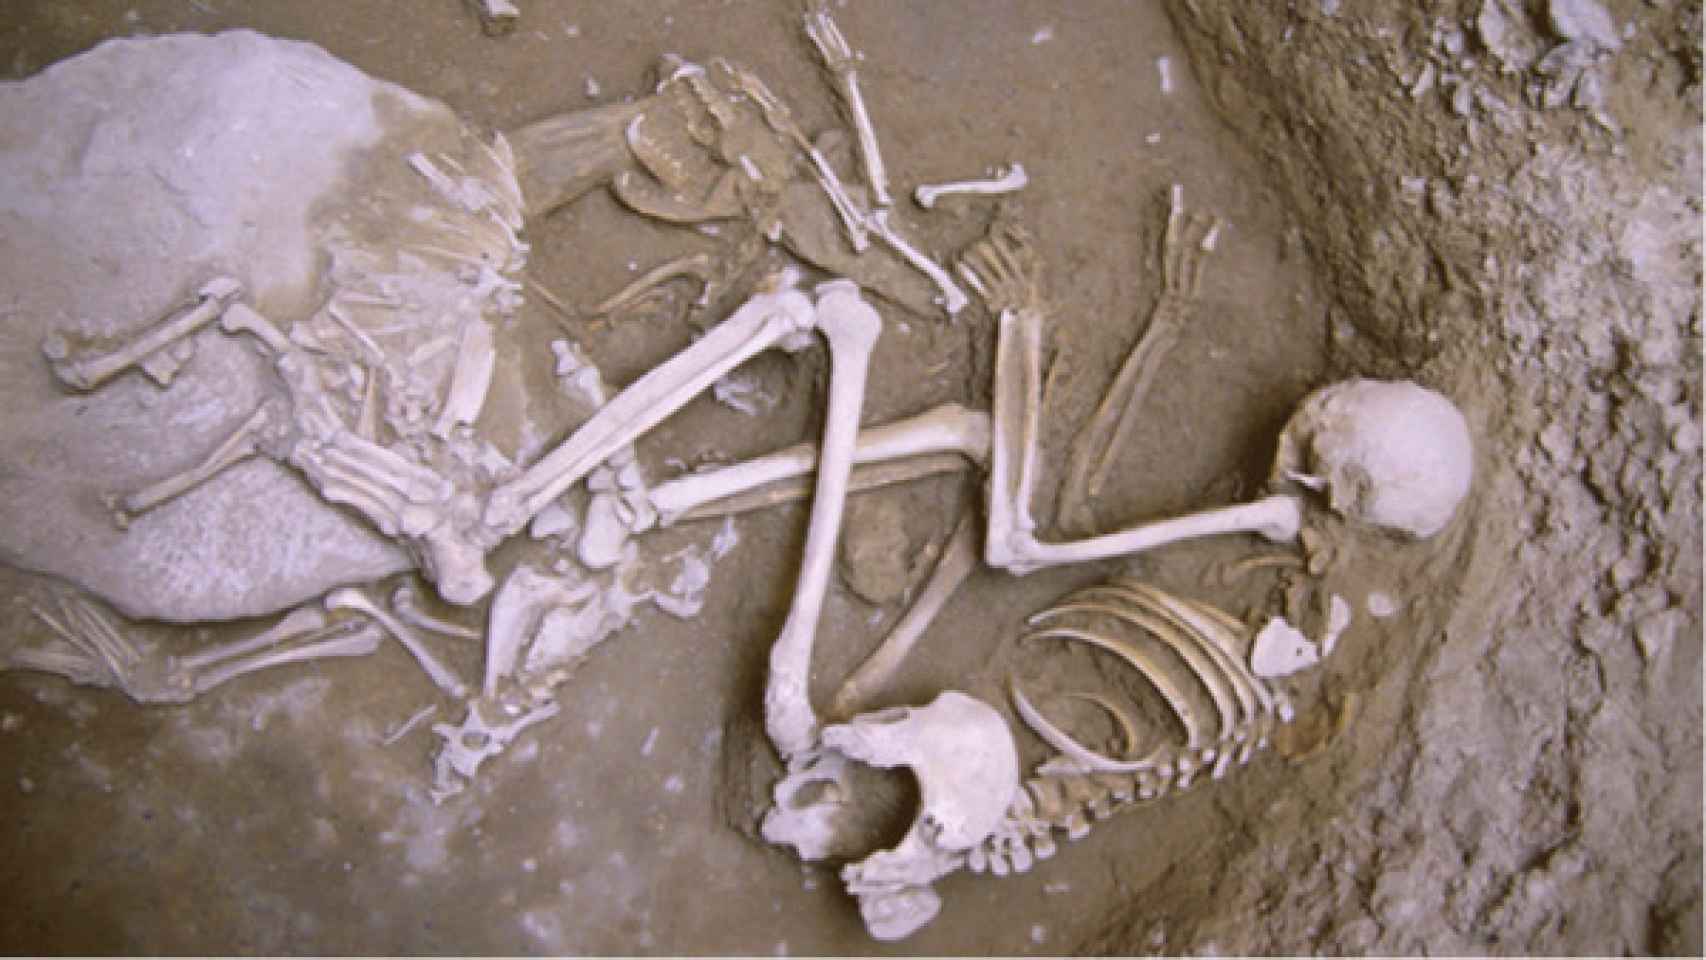 Enterramiento femenino de Minferri junto a una cabra y dos zorros. La mujer abraza al zorro hembra.